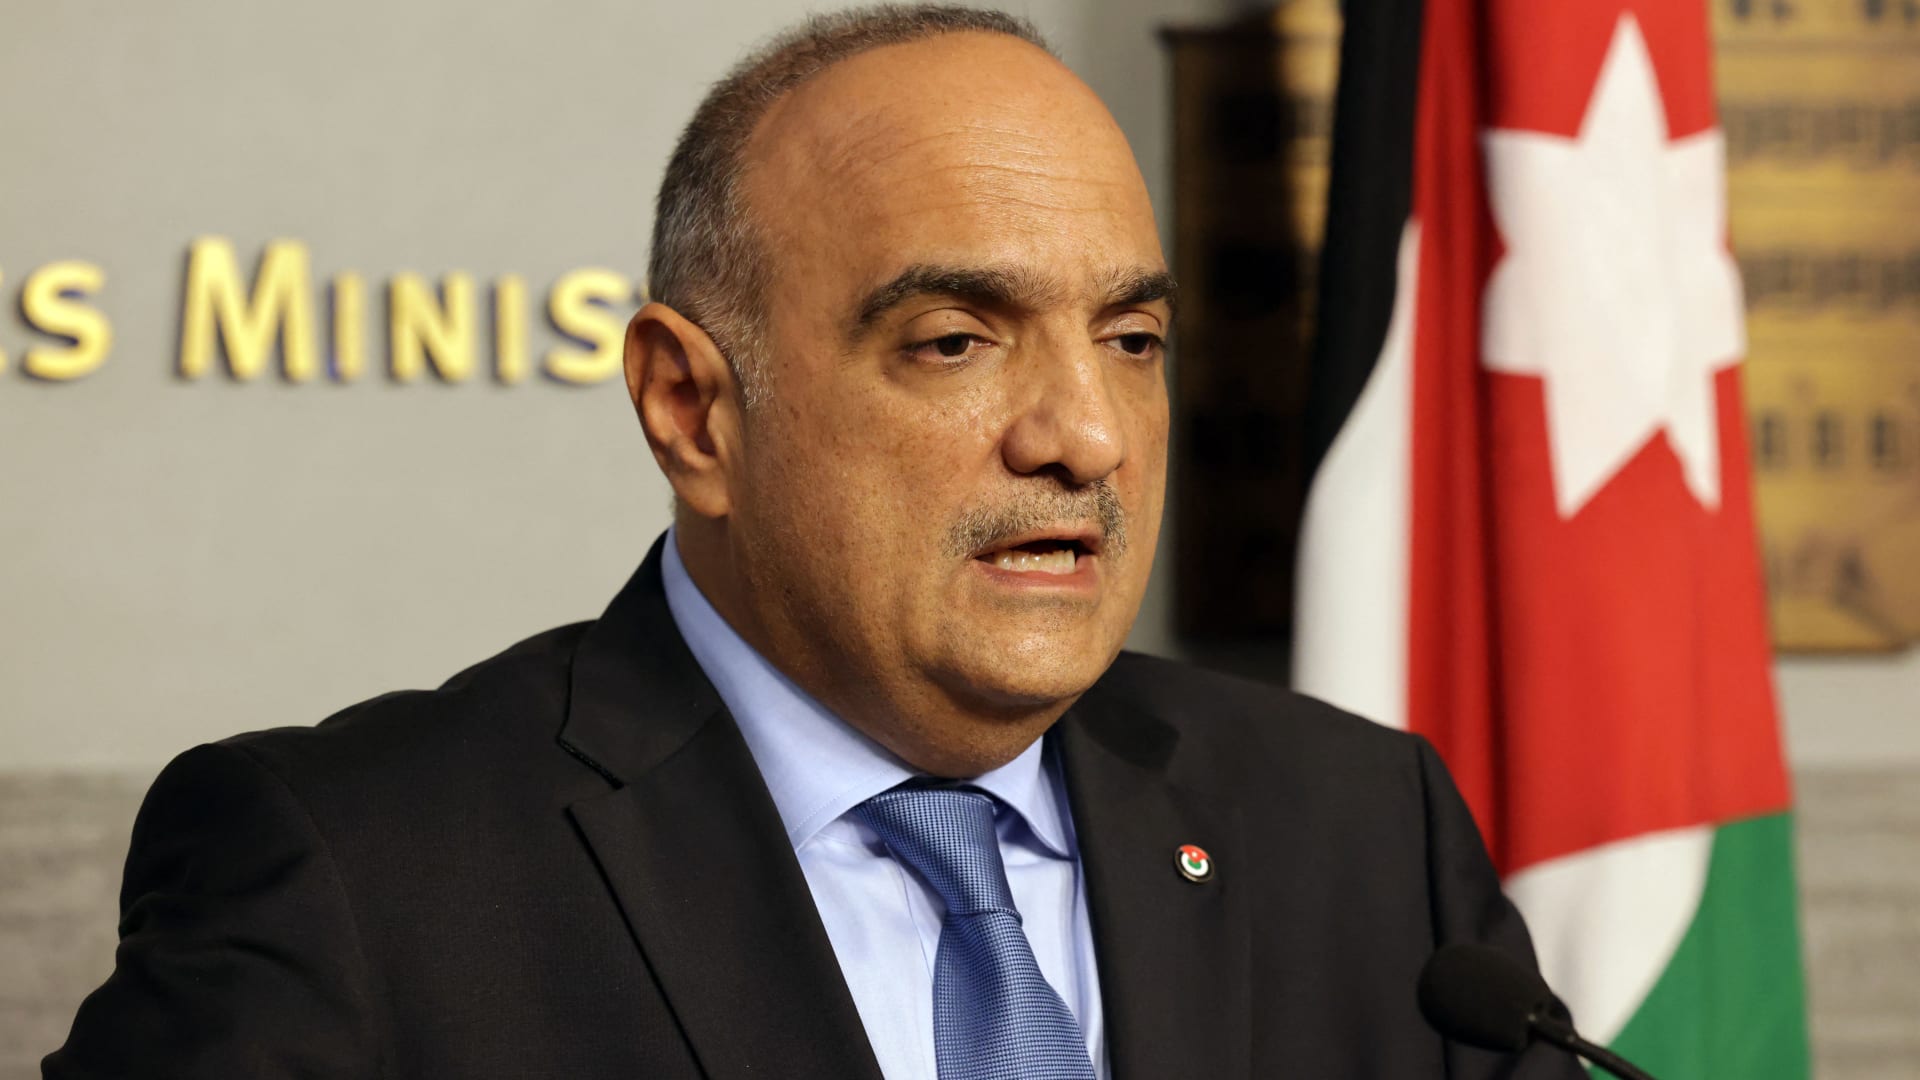 الأردن: حظر النشر بقضية أحد أطرافها رئيس الحكومة